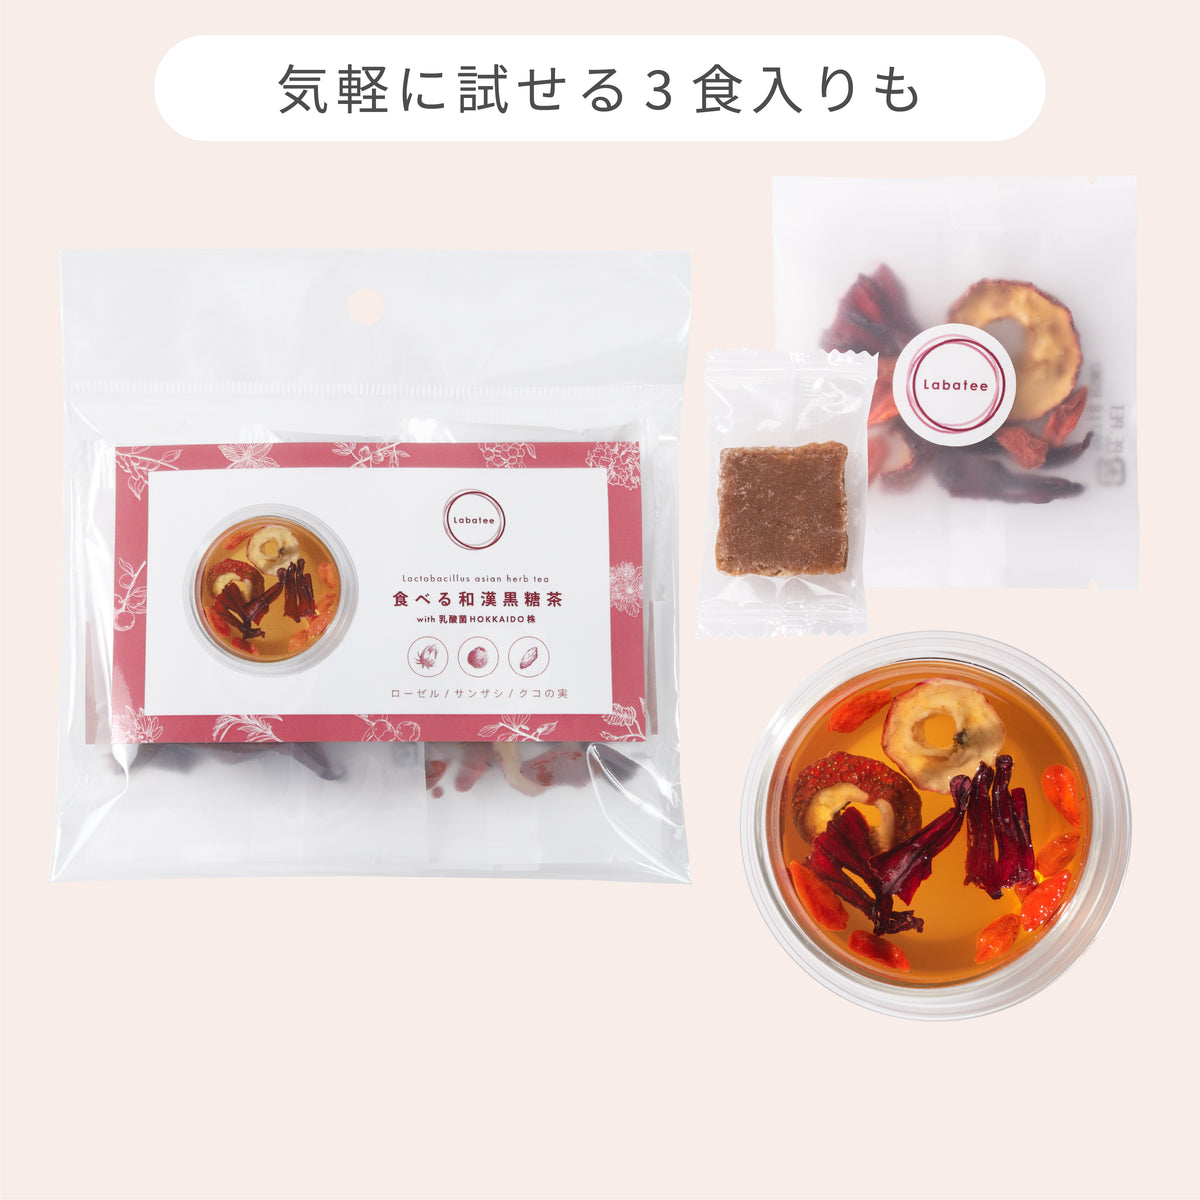 食べる和漢黒糖茶 with 乳酸菌HOKKAIDO株 サンザシ・ローゼル・クコの実